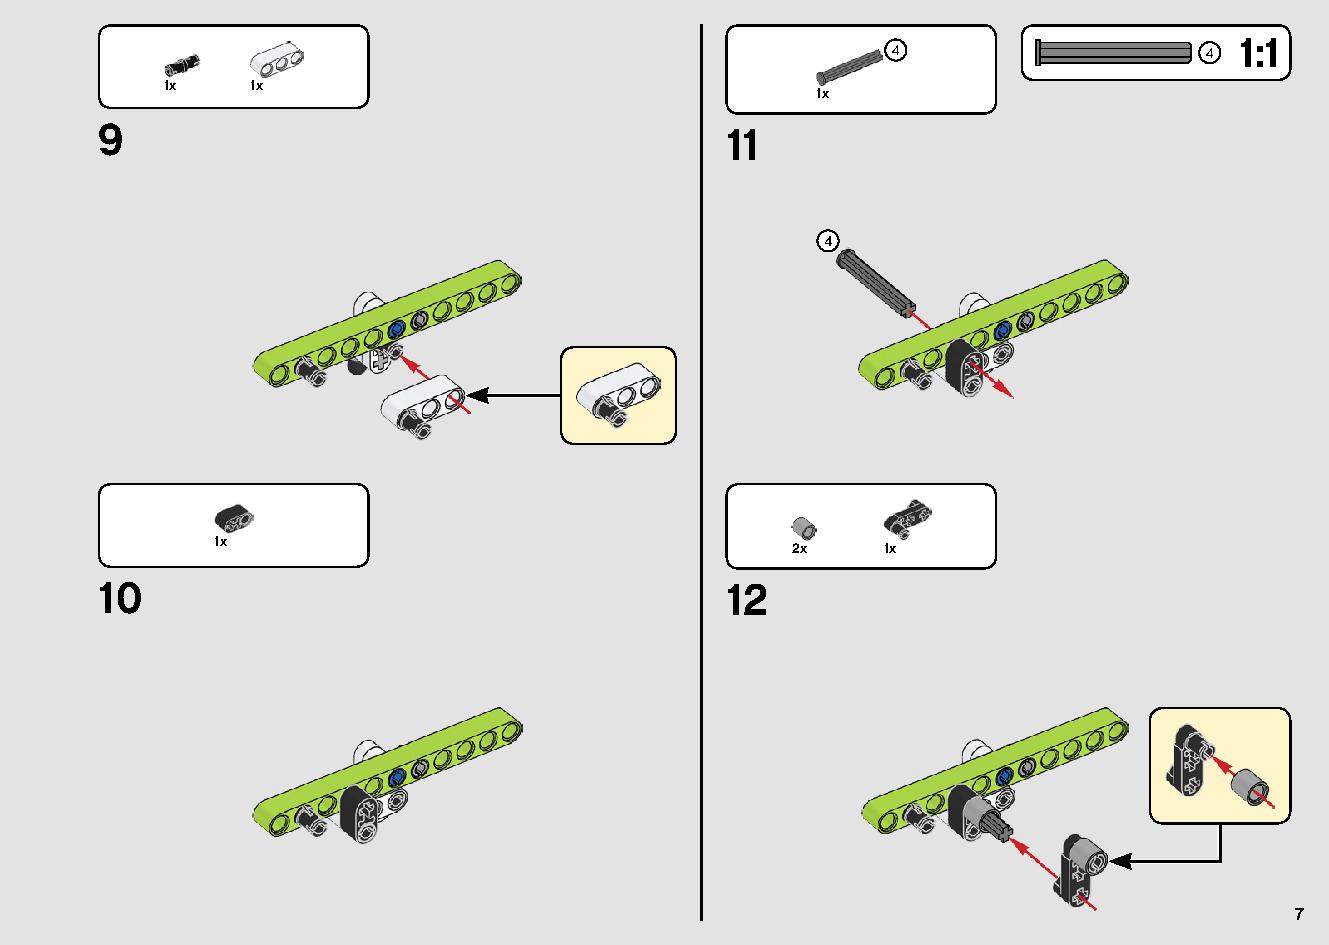 カタマランヨット 42105 レゴの商品情報 レゴの説明書・組立方法 7 page